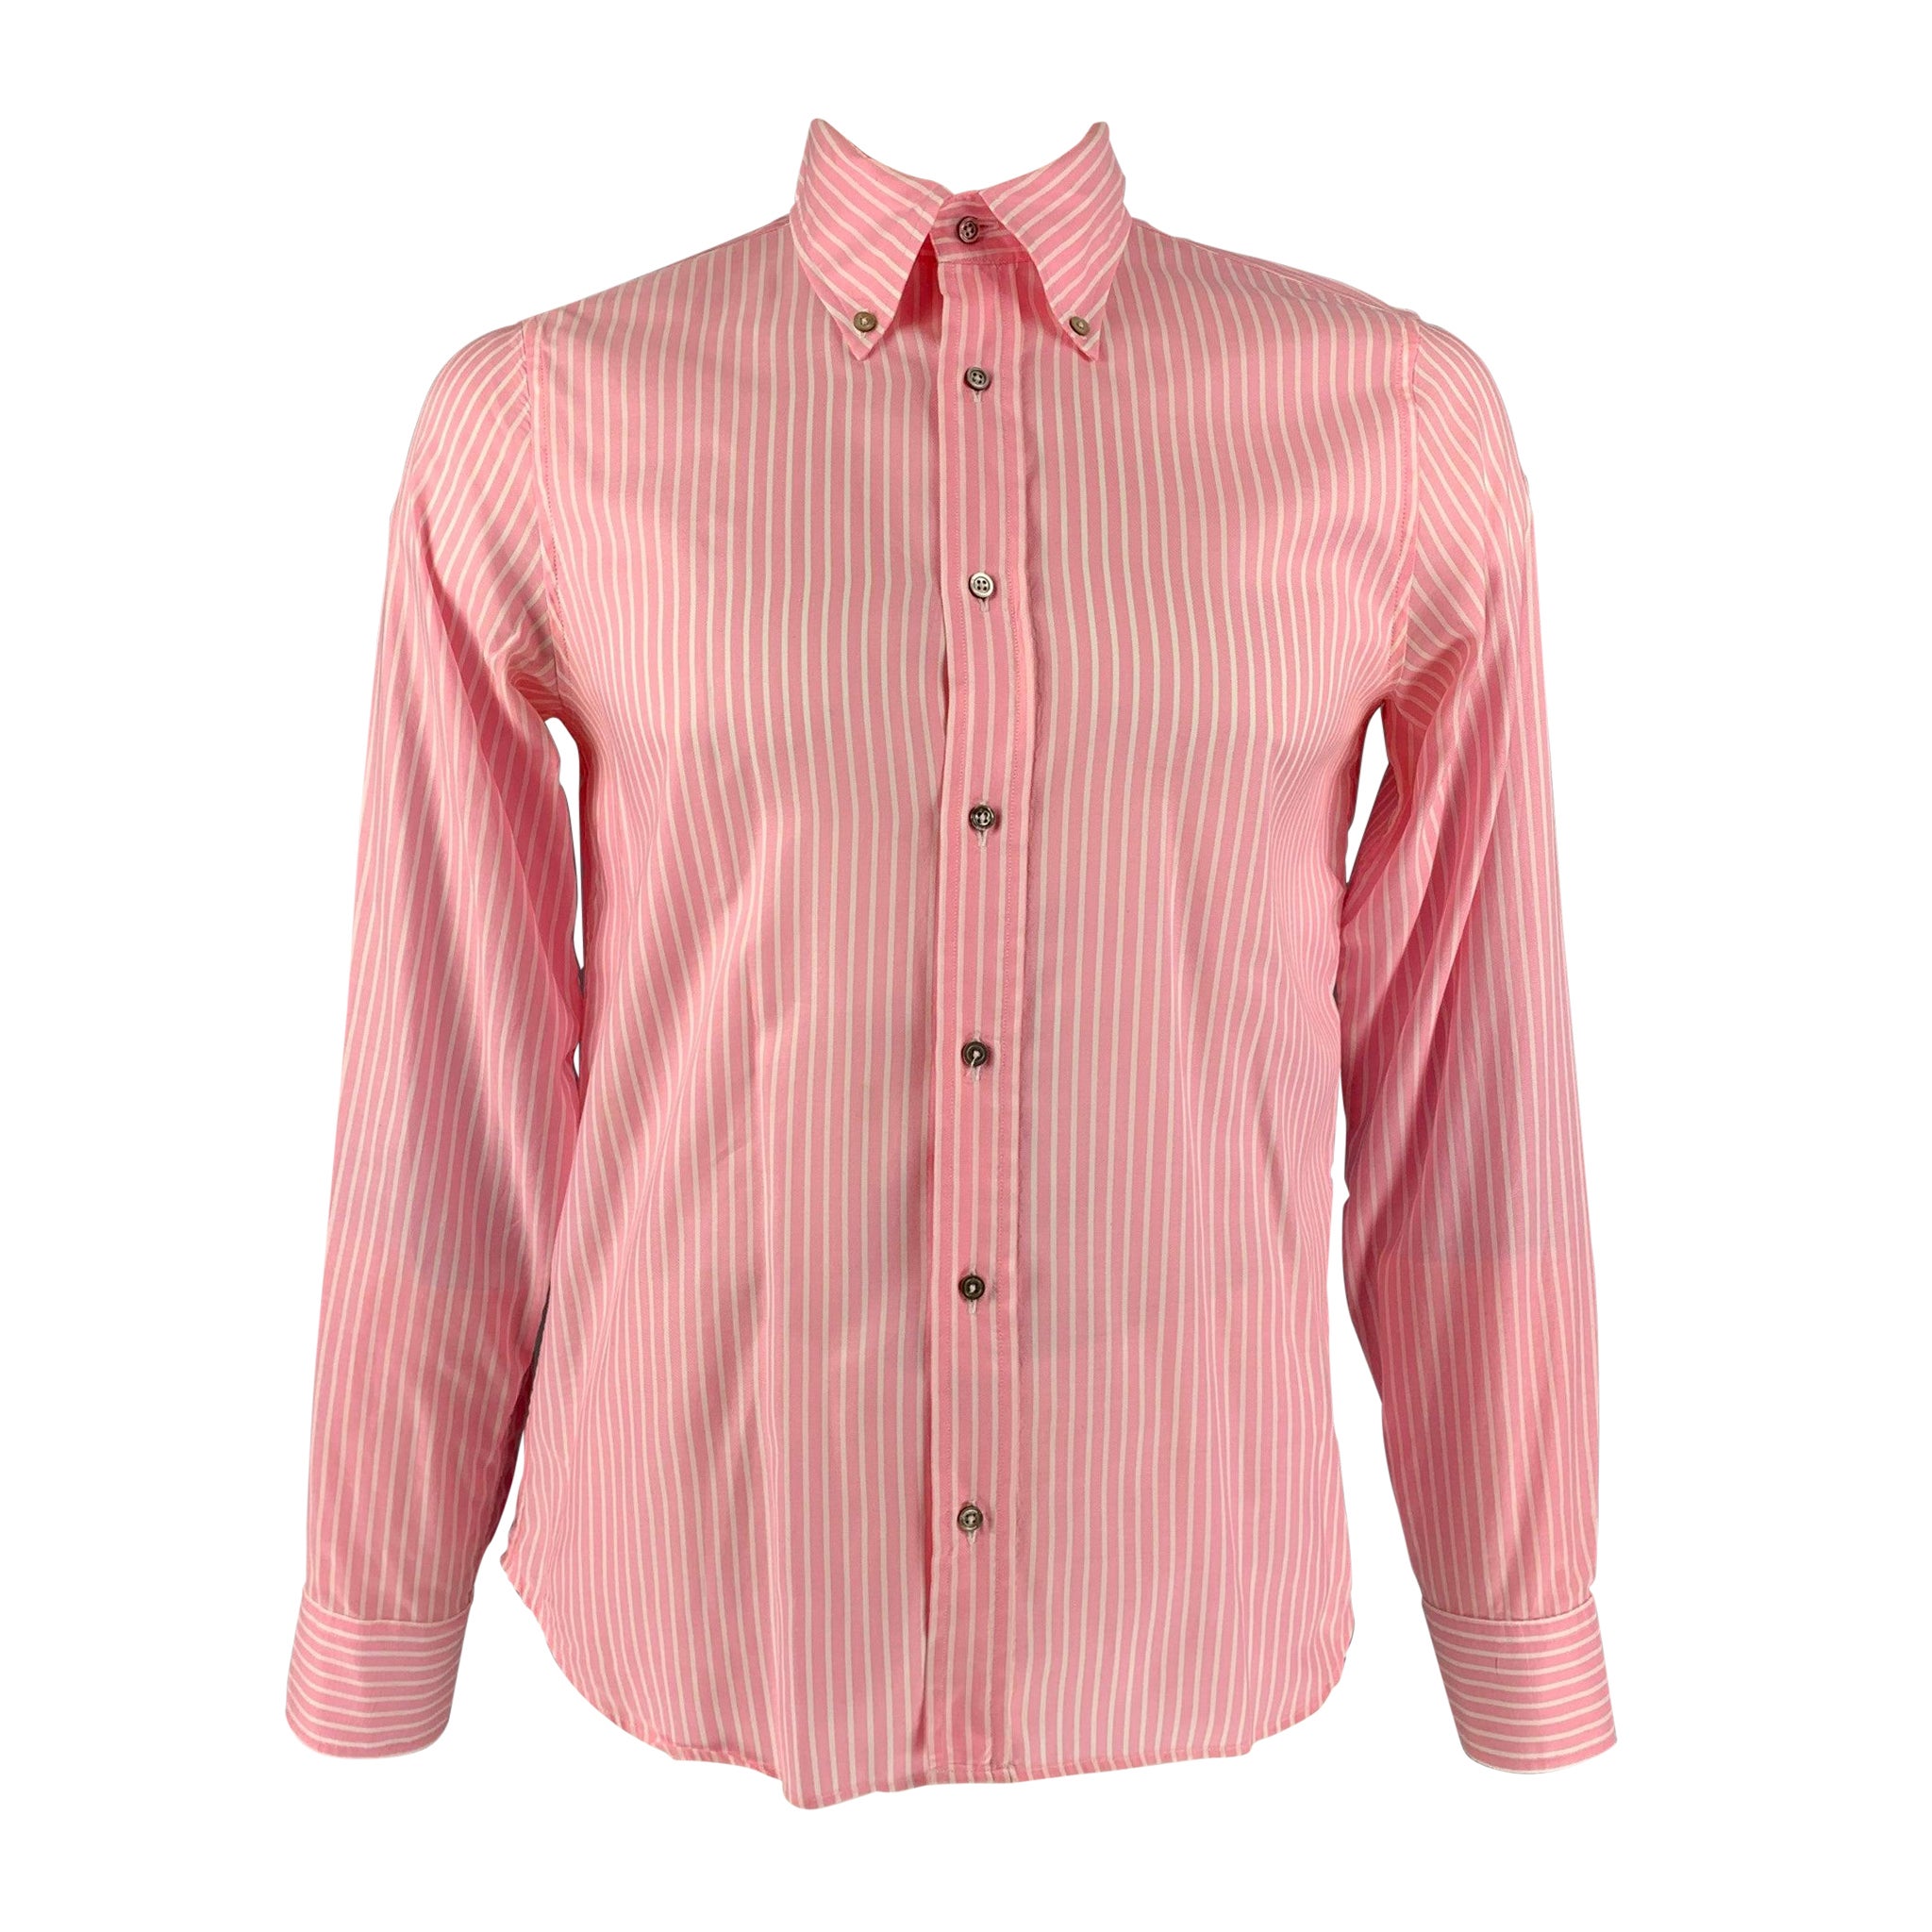 JIL SANDER Size 42 Pink White & Stripe Cotton Button Down Long Sleeve Shirt For Sale